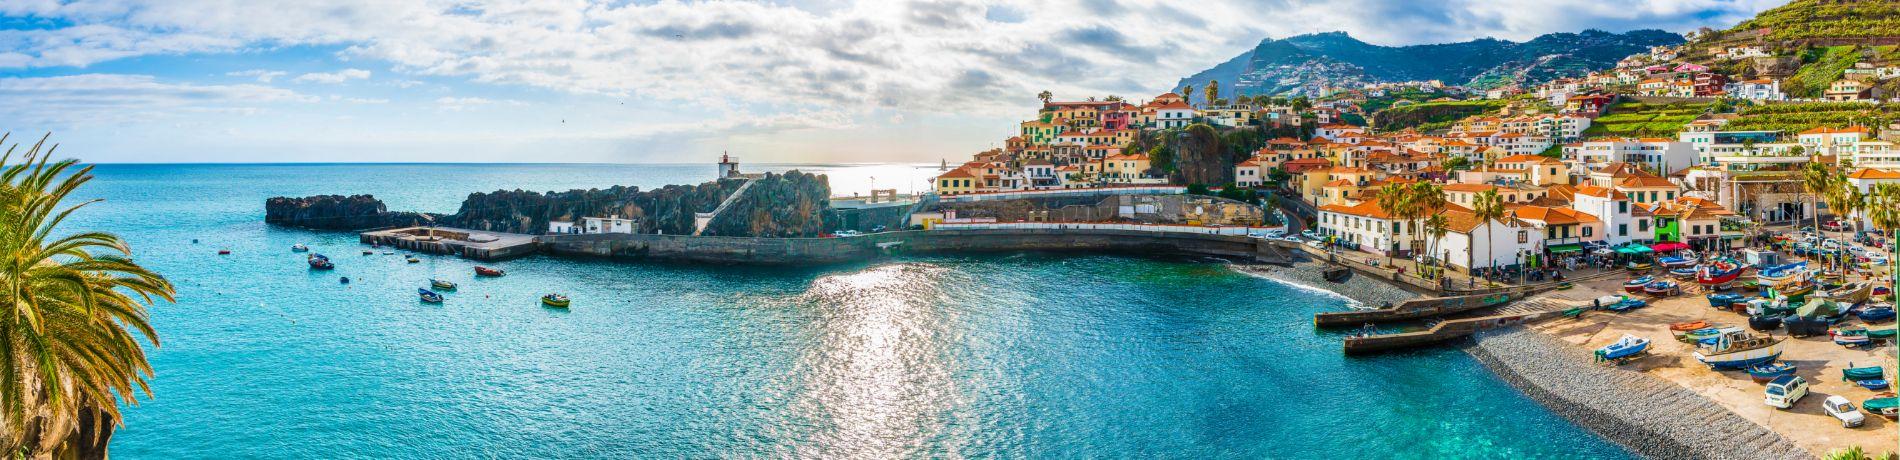 Vacanze a Madeira | Eden Viaggi